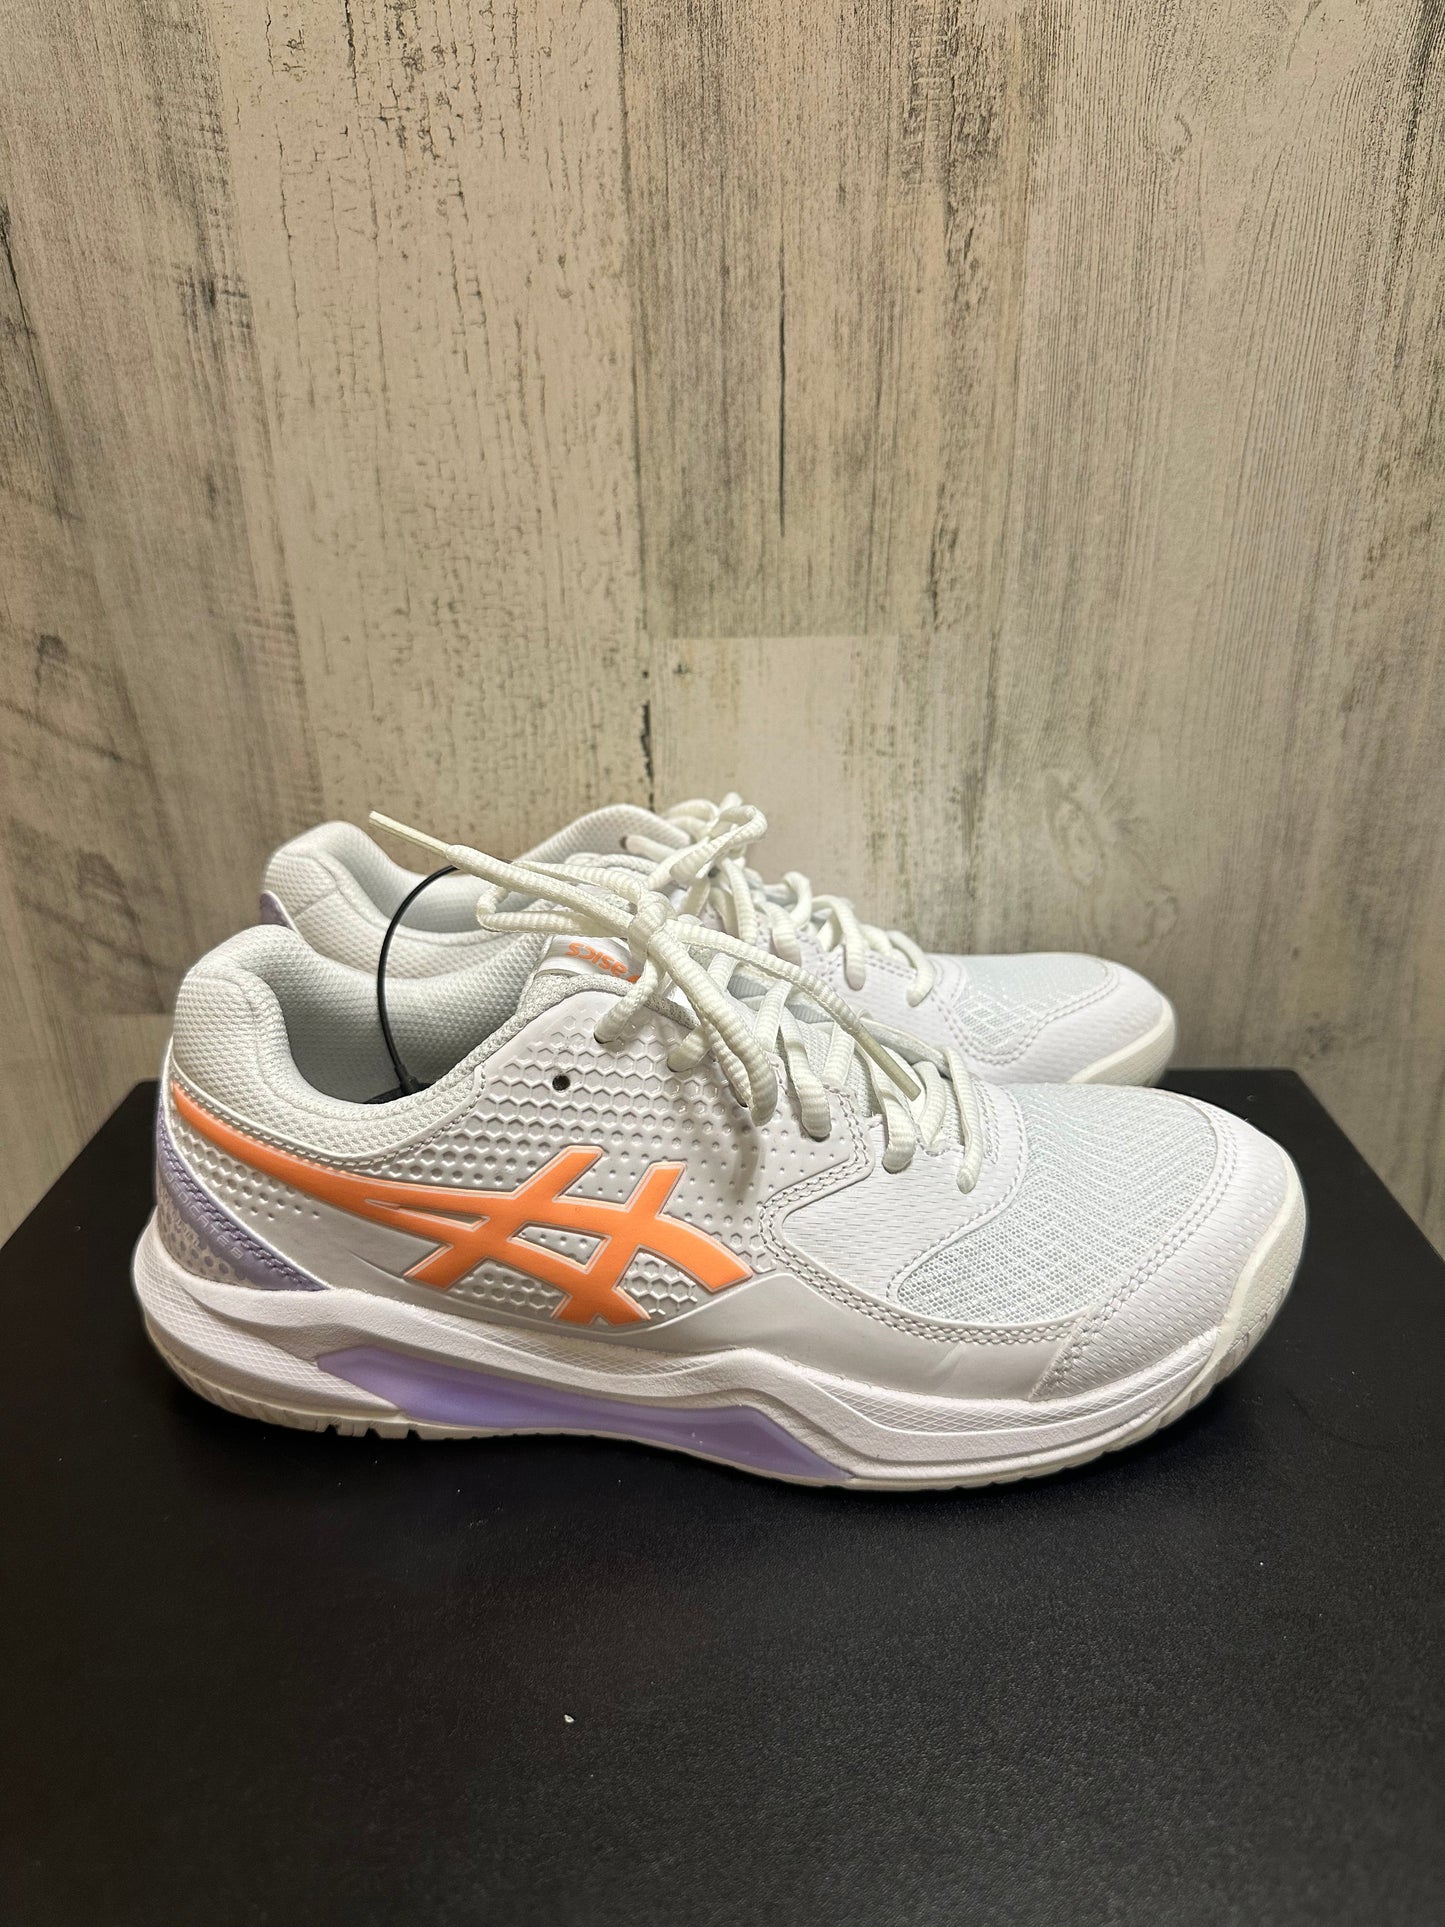 White Shoes Athletic Asics, Size 7.5